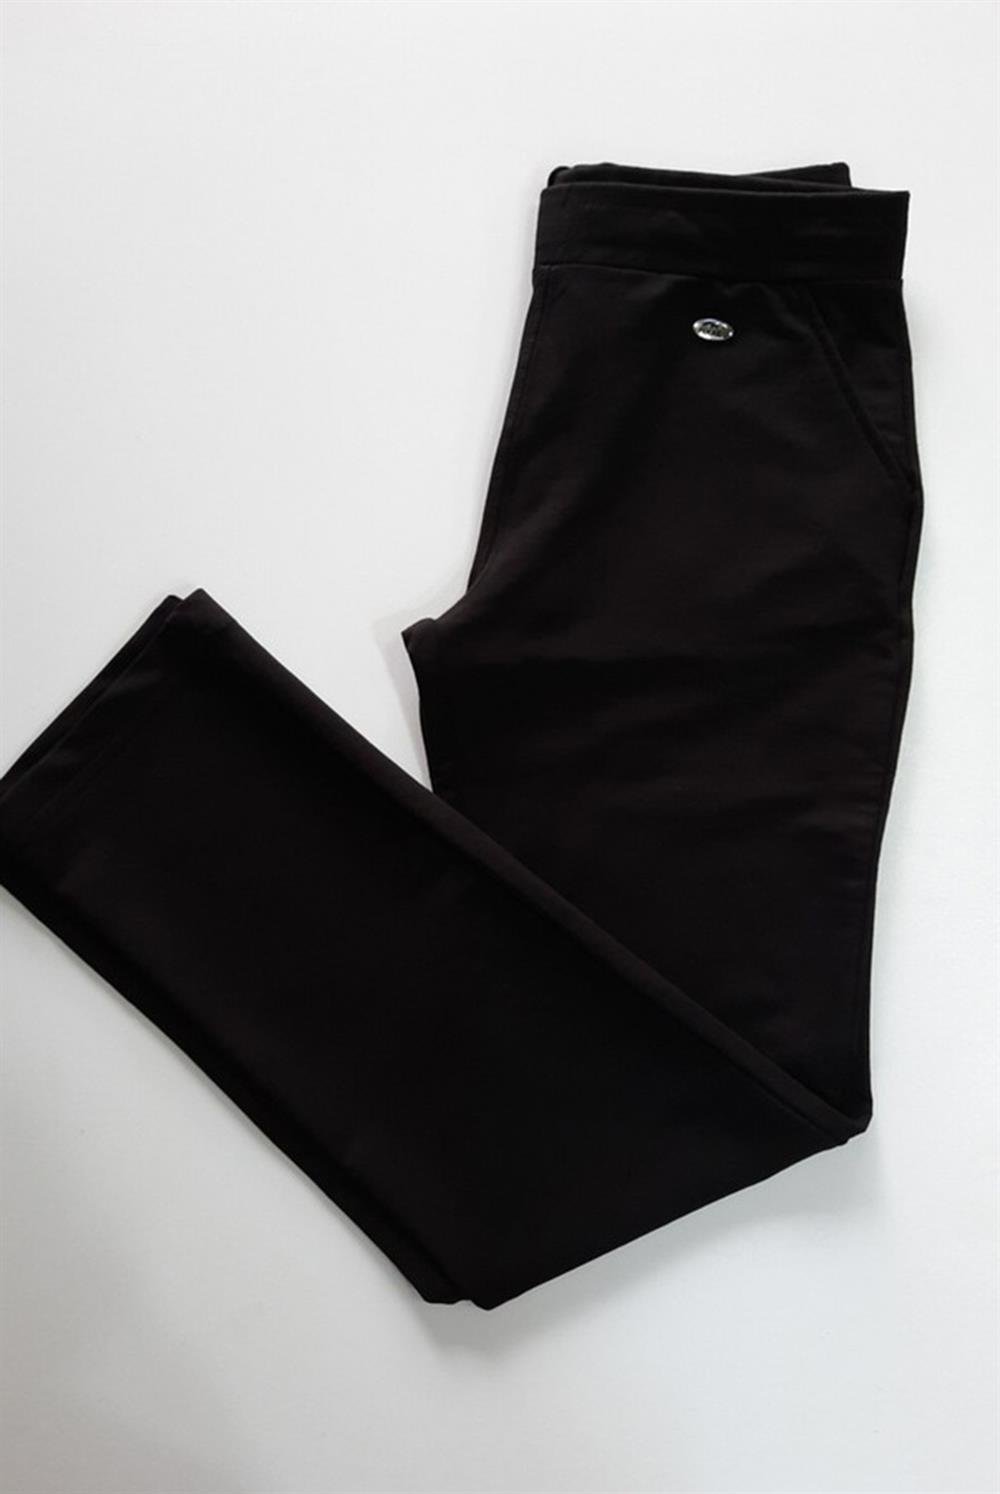 Pantalon Görünümlü Kadın Eşofman Altı 0376 Siyah